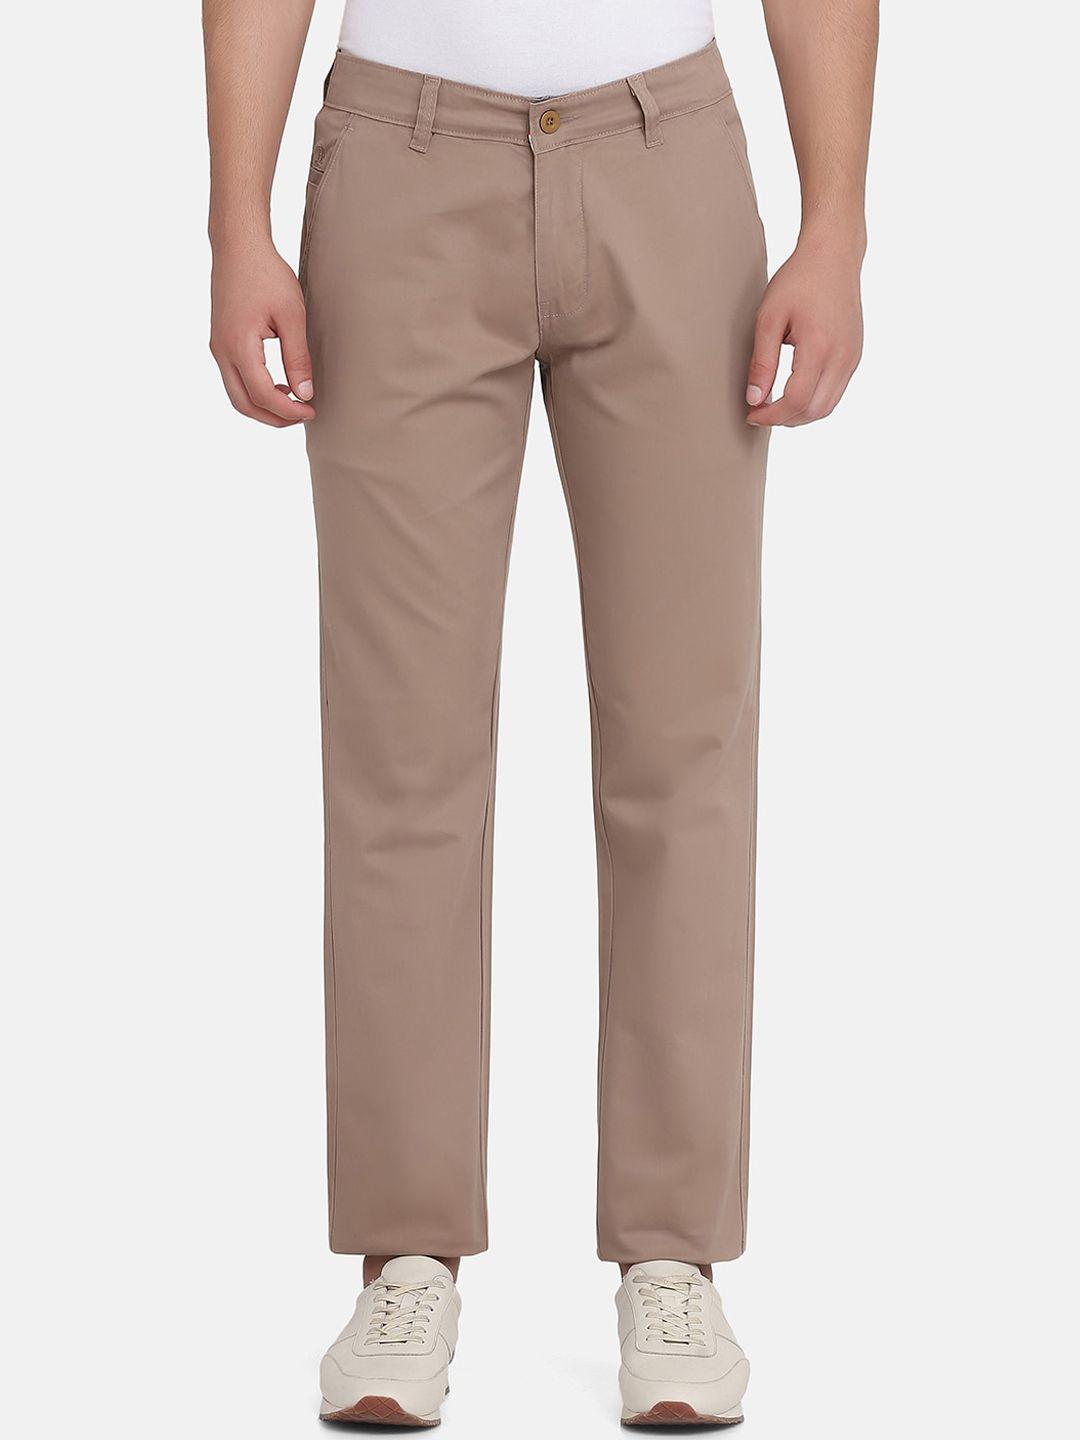 tahvo-men-camel-brown-comfort-chinos-trousers